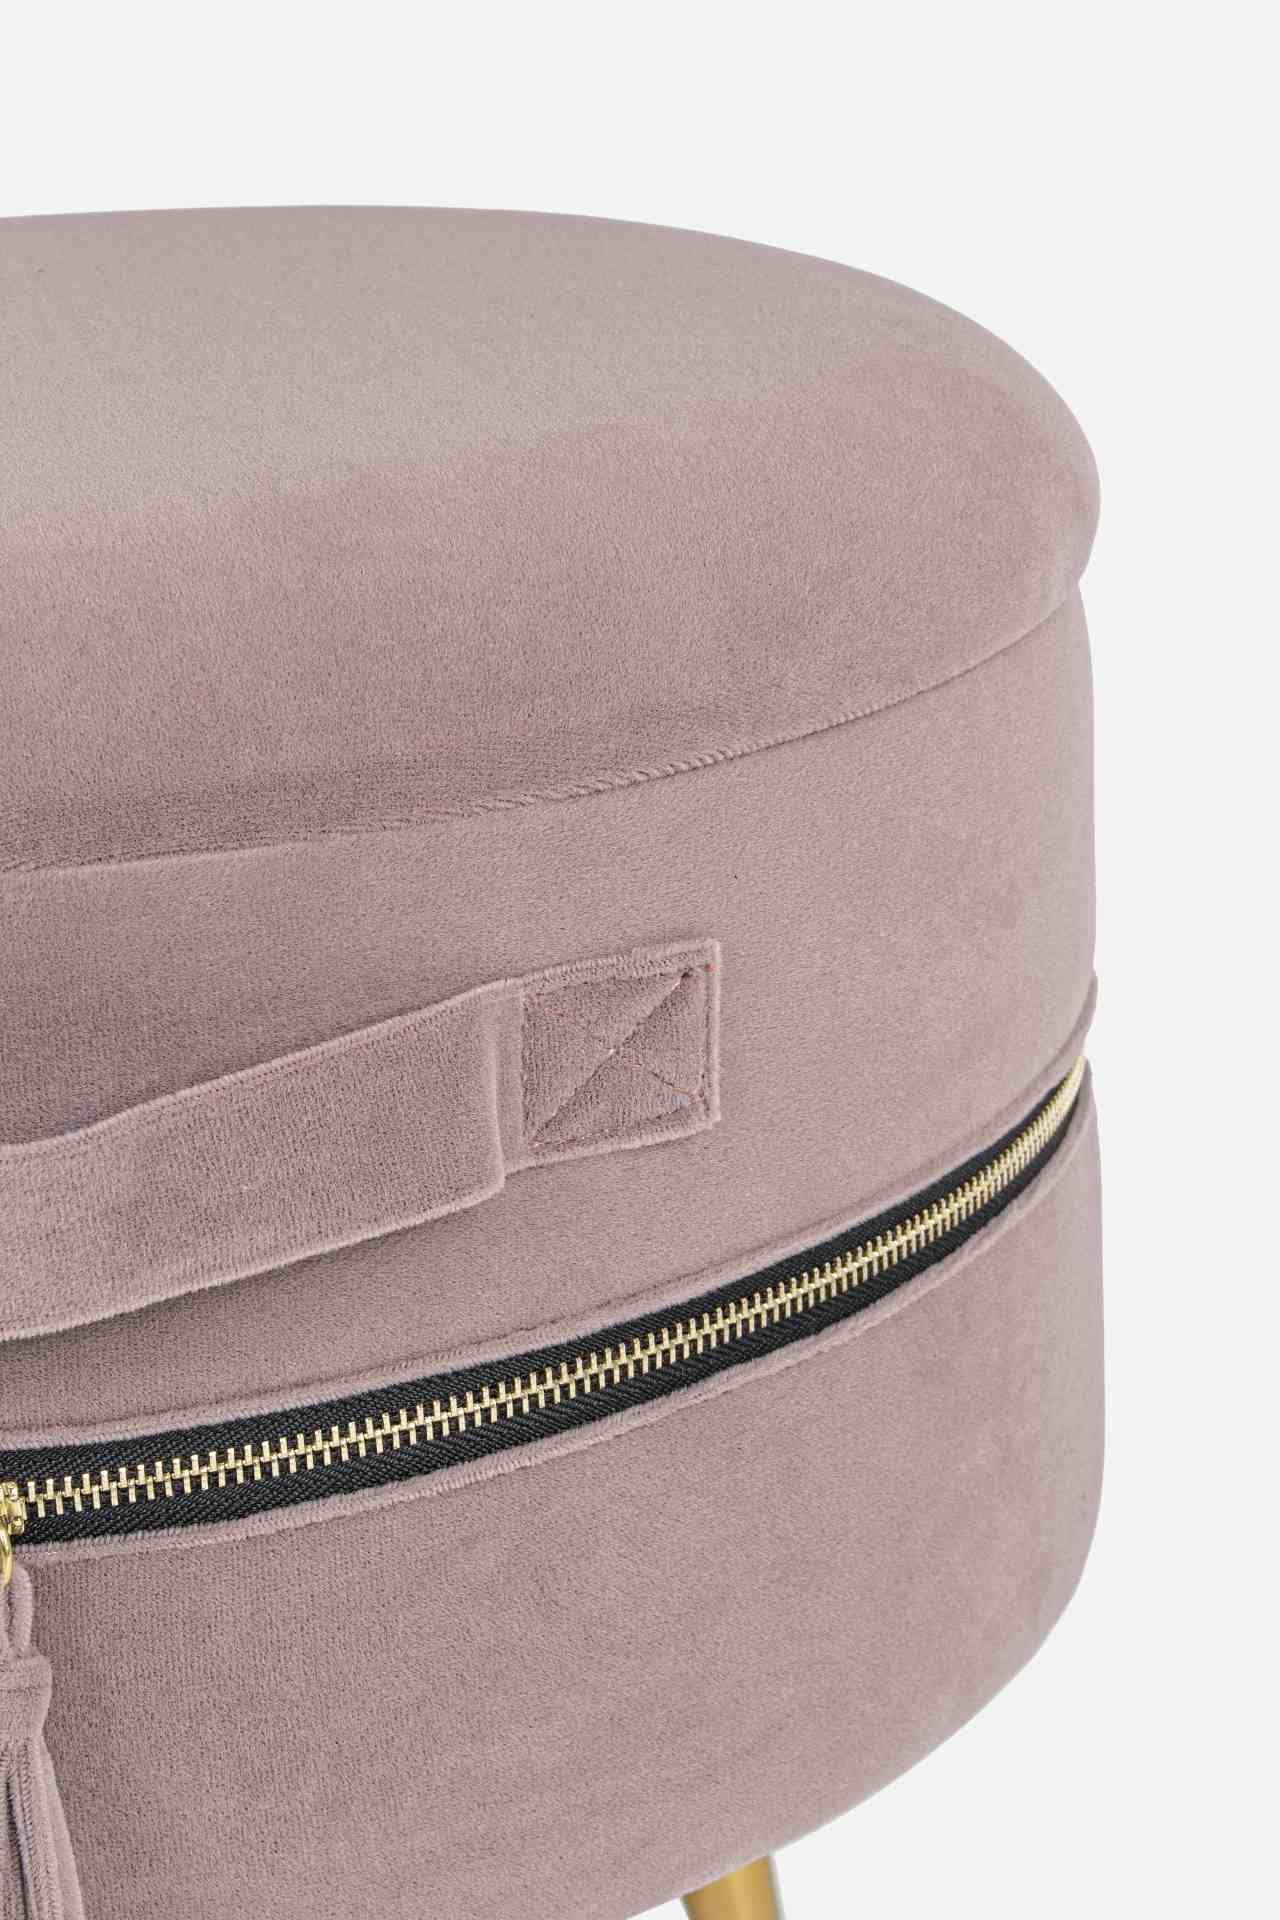 Der Hocker Pavlina überzeugt mit seinem modernen Design. Erhältlich ist er als 2er-Set. Gefertigt wurde er aus Stoff in Samt-Optik, welcher einen rosa Farbton besitzt. Das Gestell ist aus Metall und hat eine goldene Farbe. Der Durchmesser beträgt 39 cm.